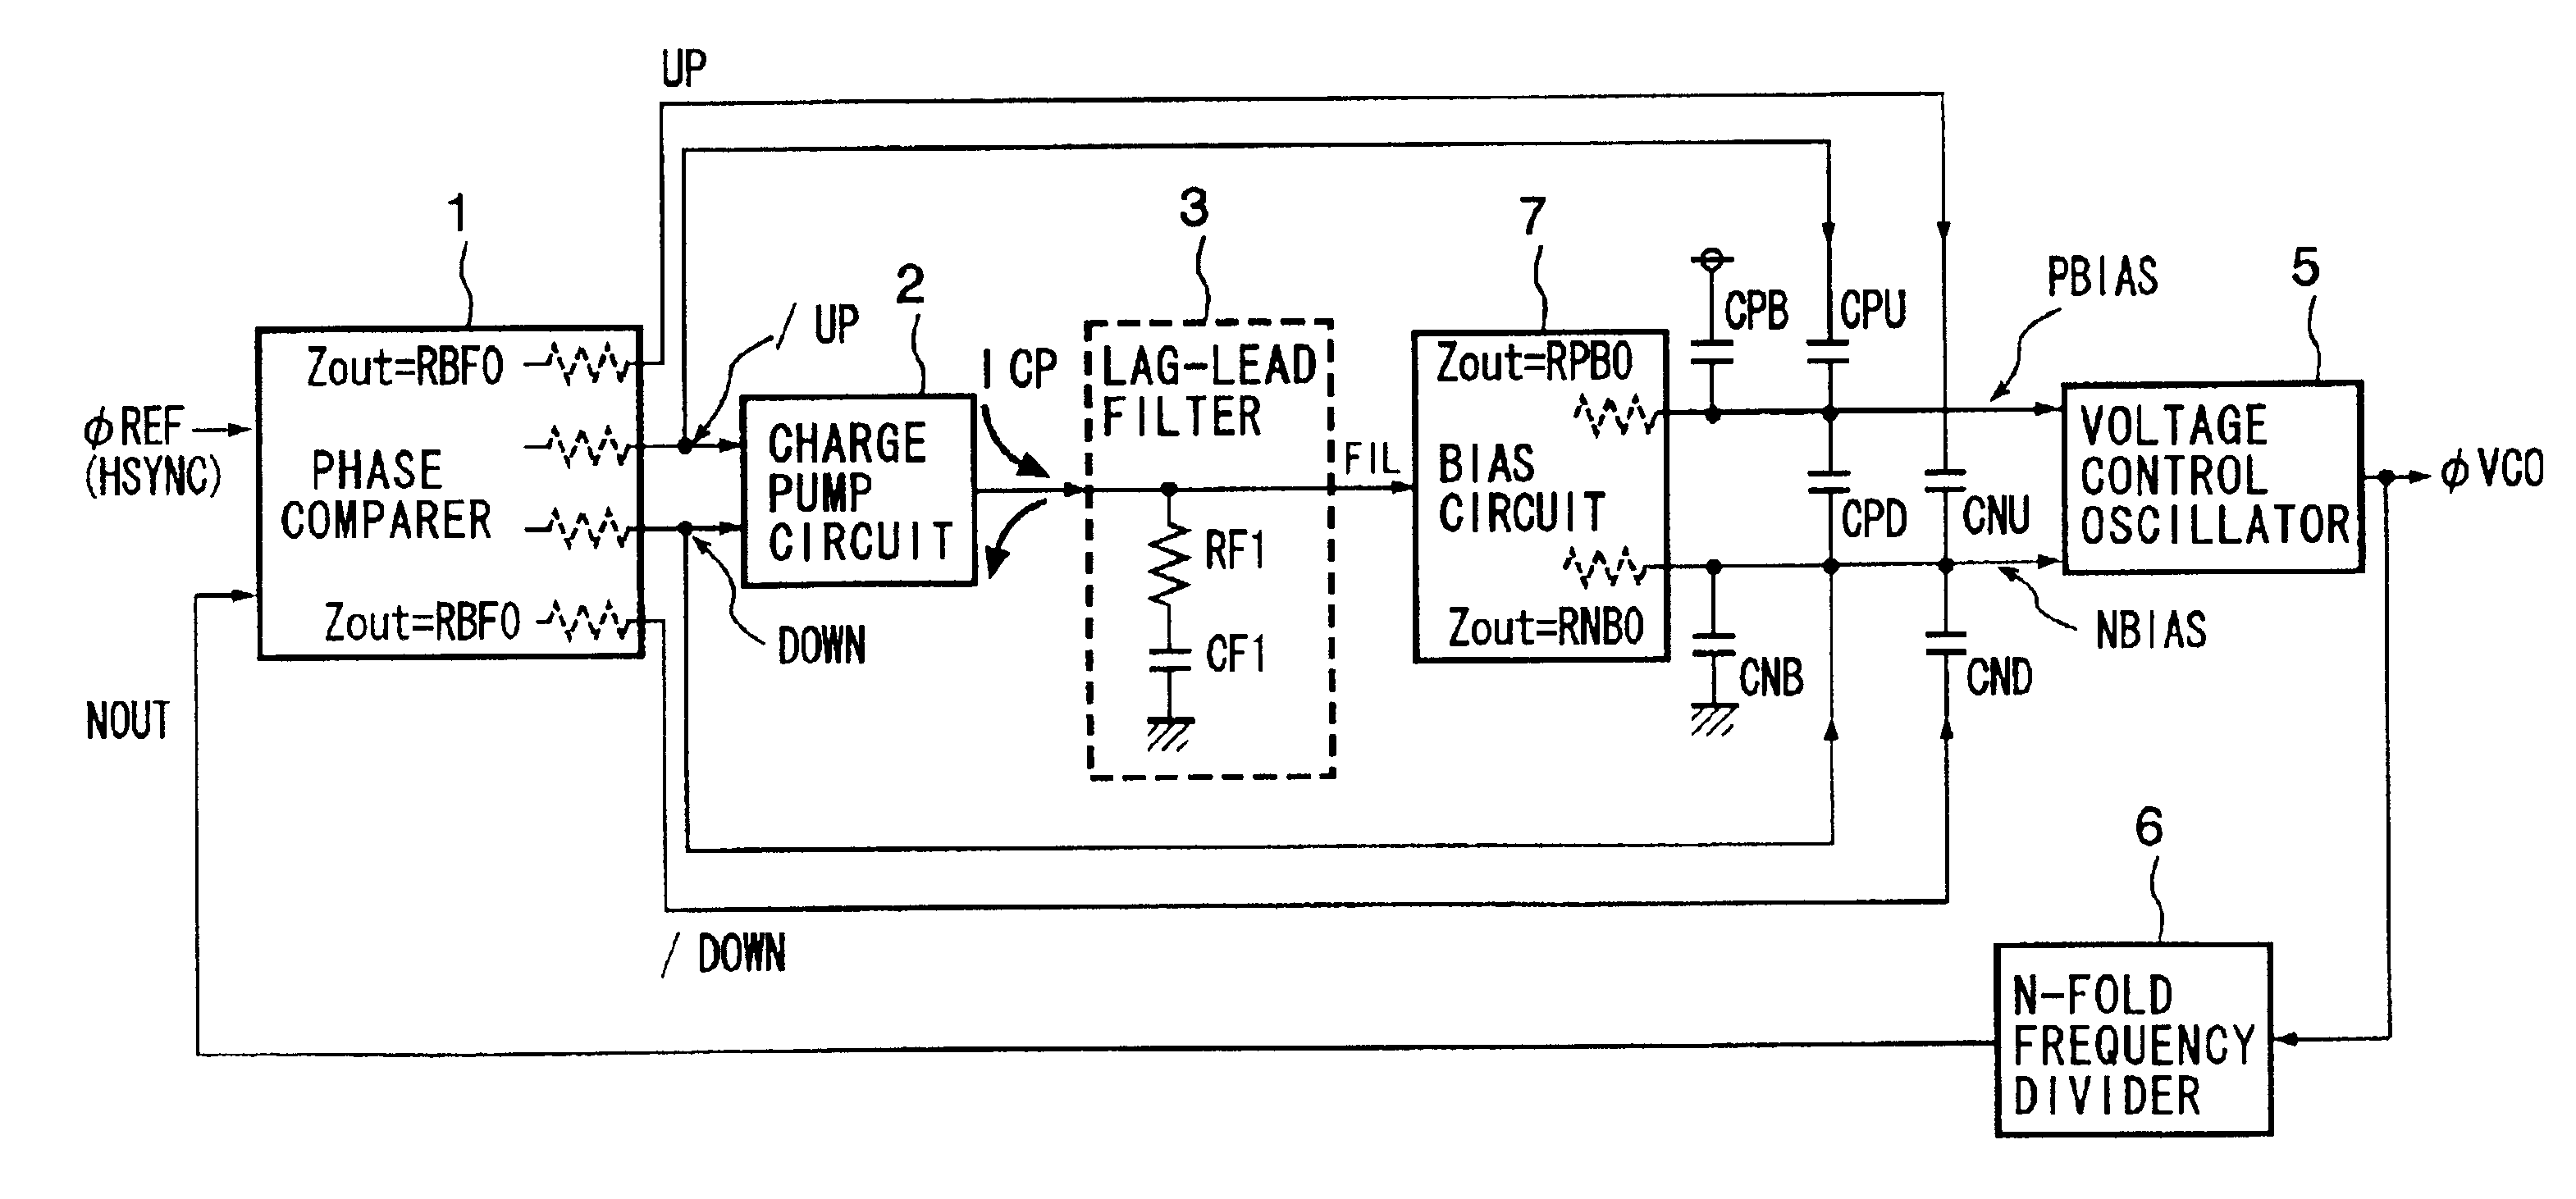 Phase-locked loop circuit and delay-locked loop circuit